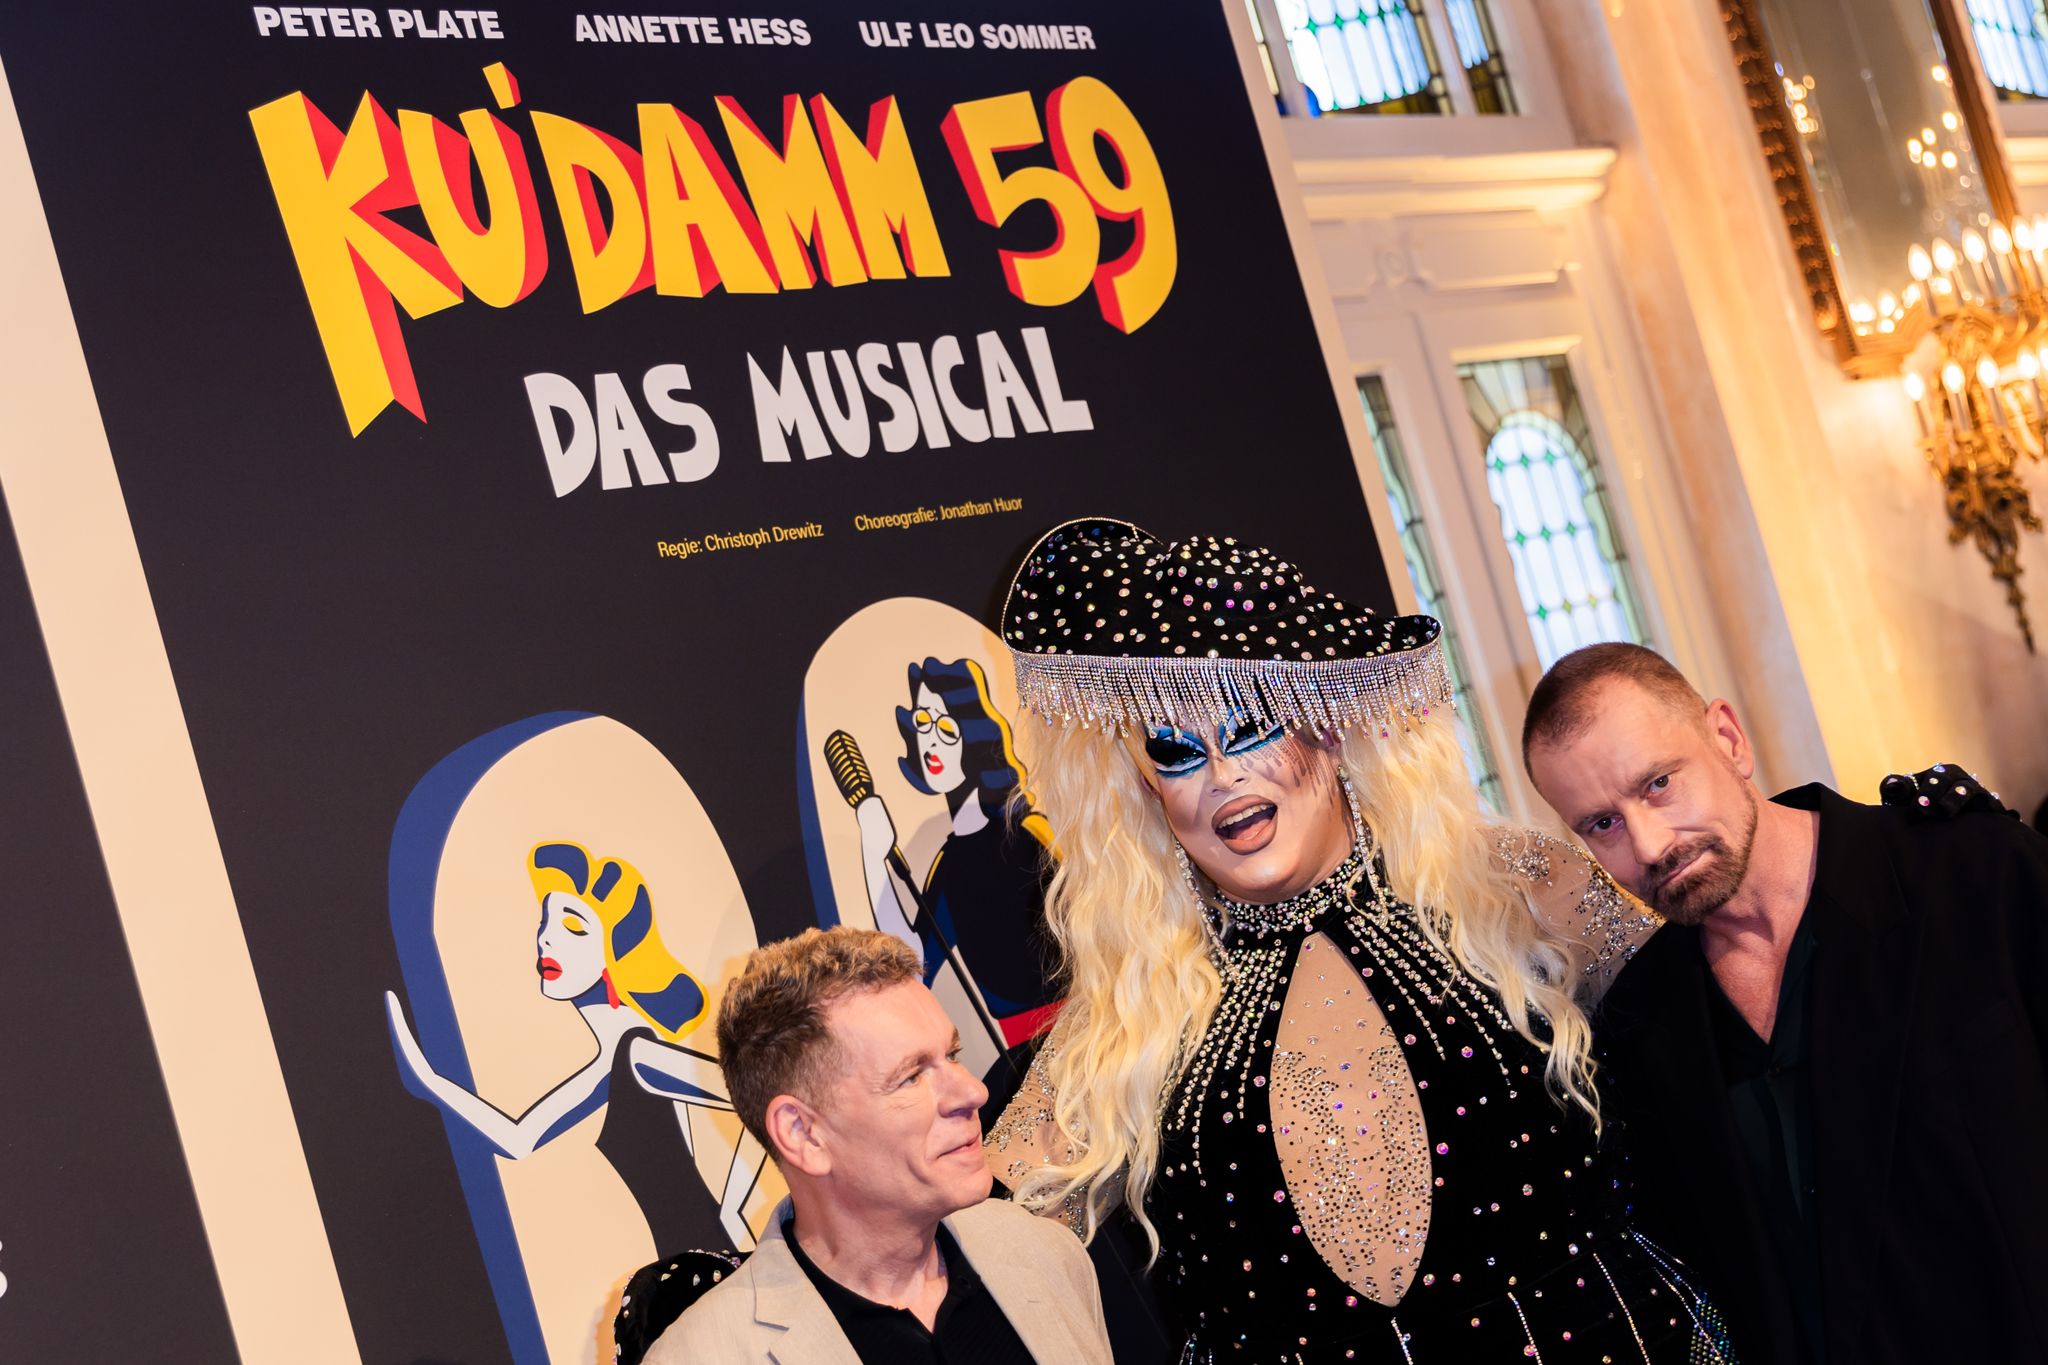 Das dreistündige Stück «Ku'damm 59 - Das Musical» wurde von Autorin Annette Hess und dem durch Rosenstolz bekannten Songschreiber-Team Ulf Leo Sommer und Peter Plate entwickelt.